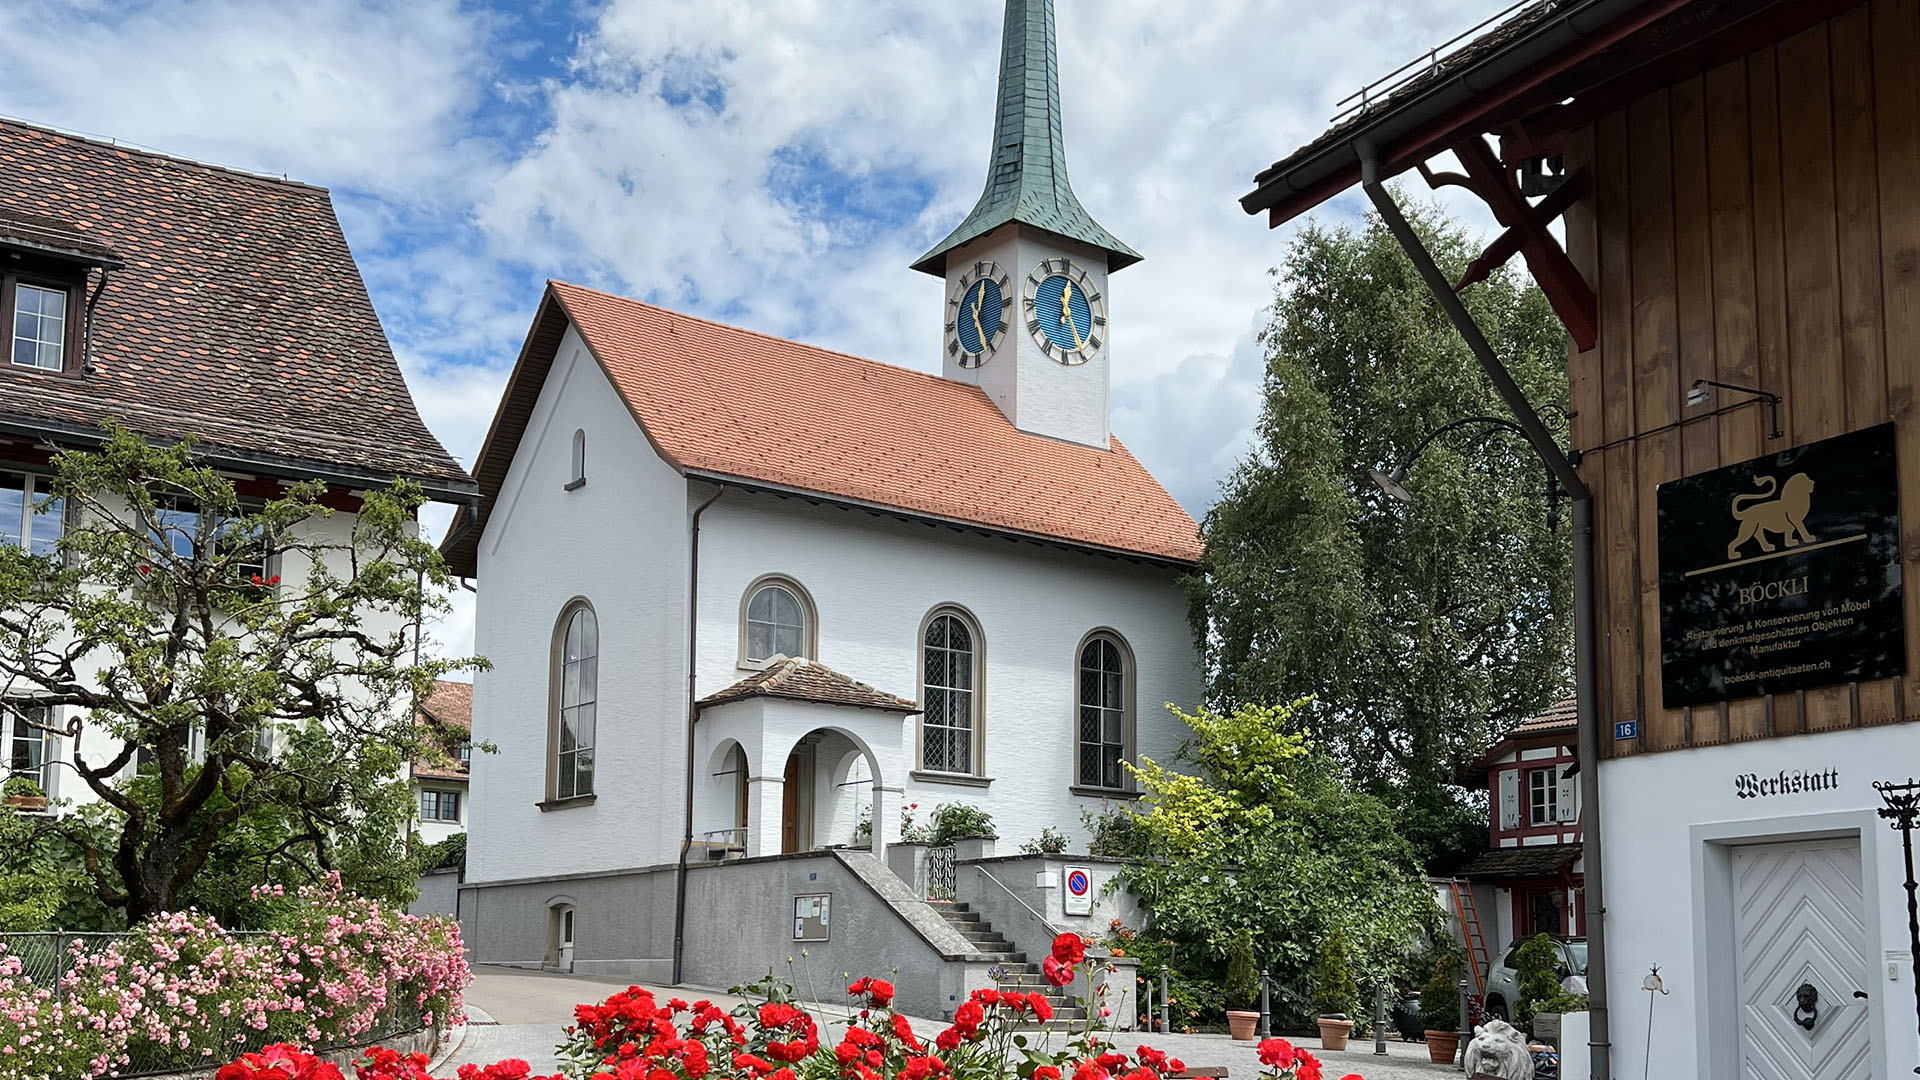 A church in a European city